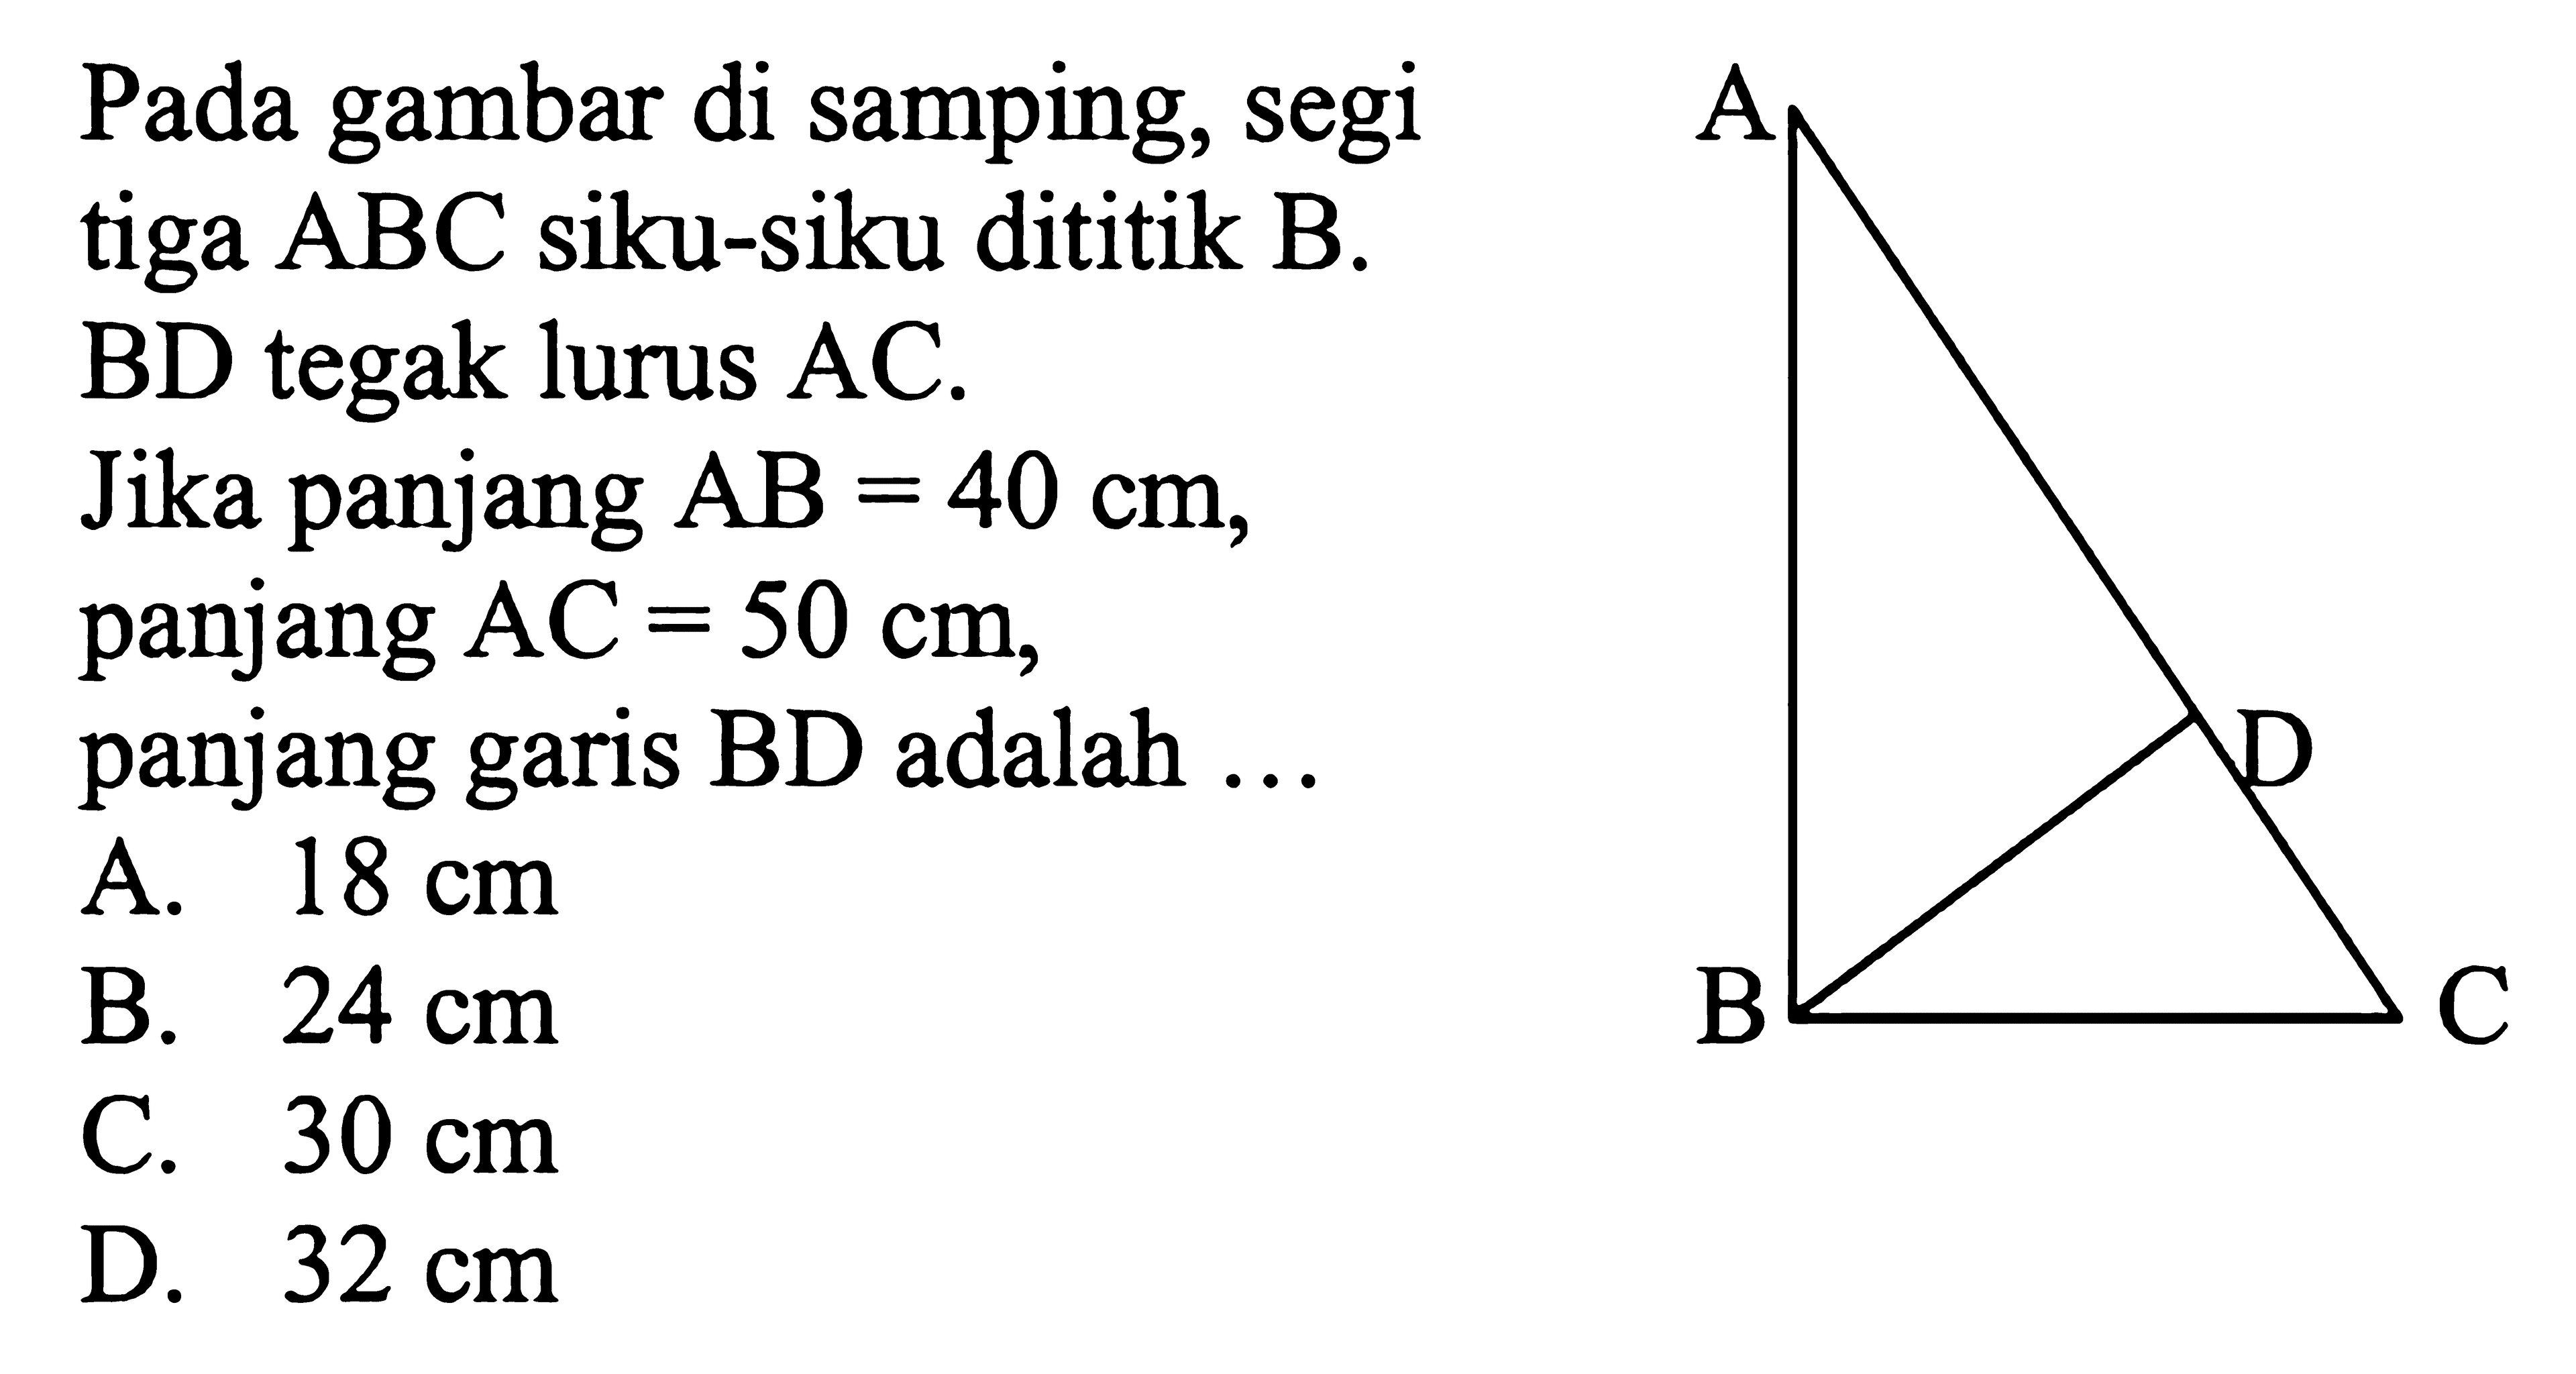 Pada gambar di samping, segitiga ABC siku-siku dititik B. BD tegak lurus AC .Jika panjang AB=40 cm panjang AC=50 cm, panjang garis BD adalah  ... 